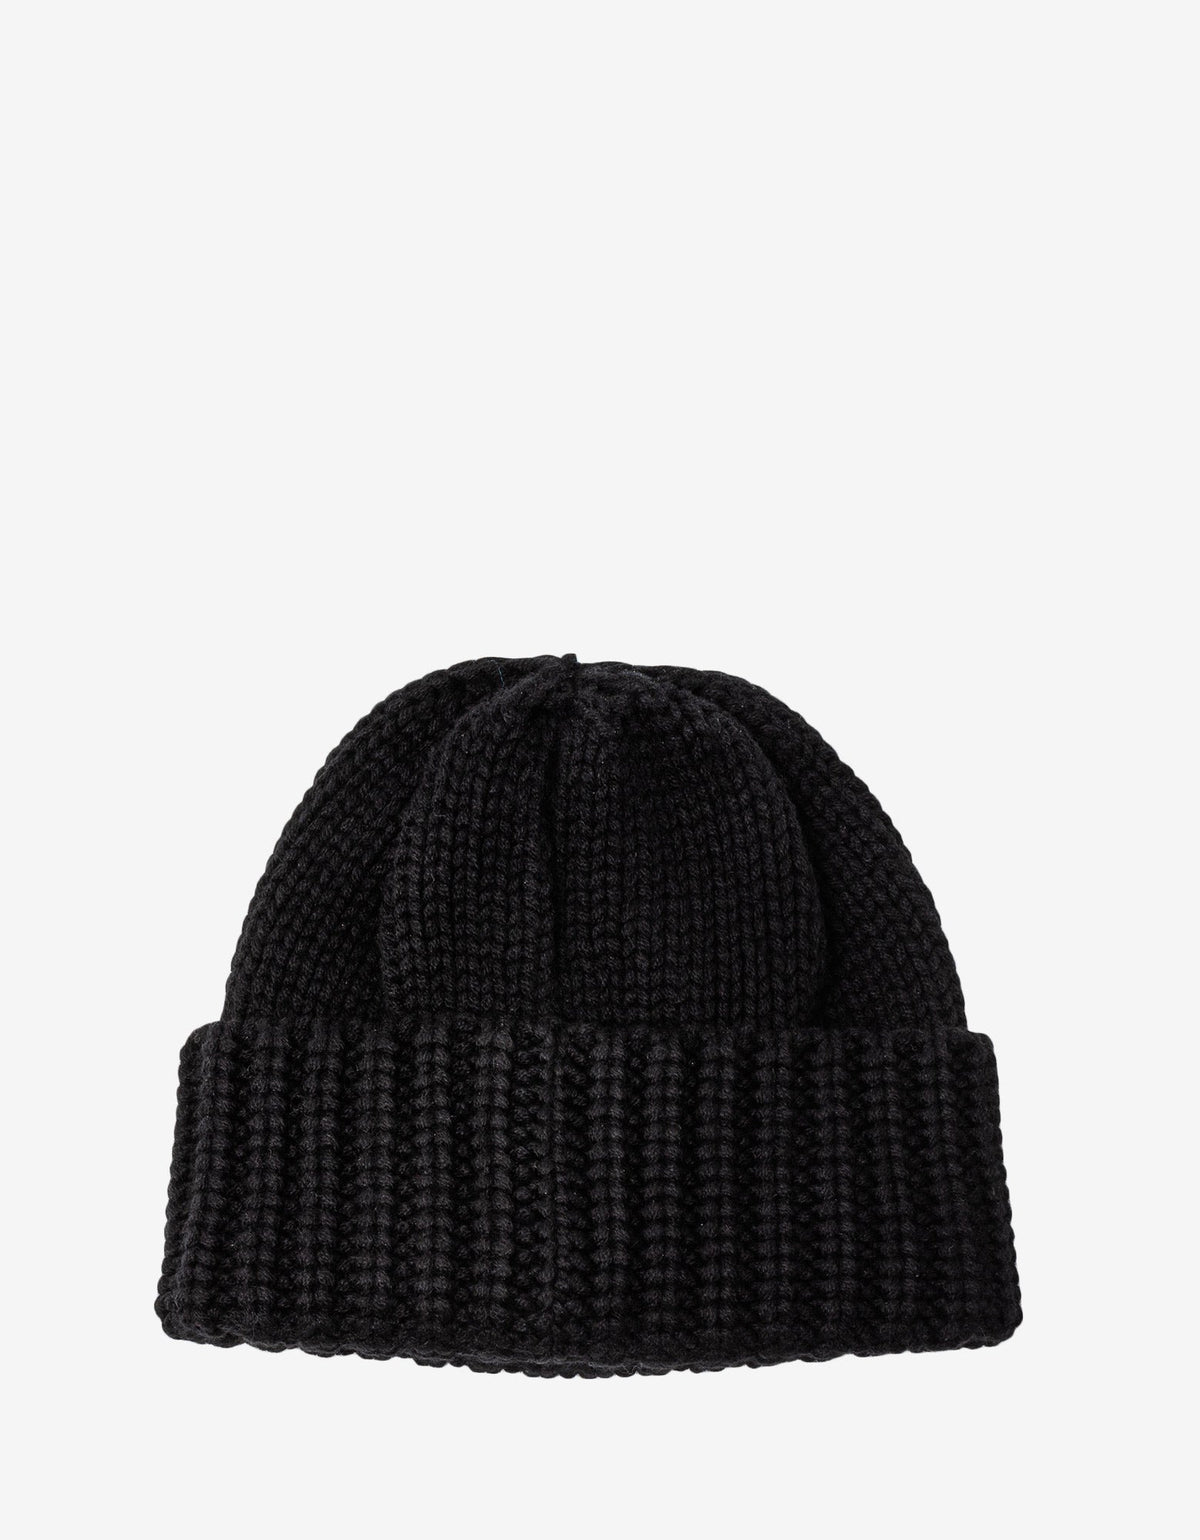 Saint Laurent Black Cashmere Beanie Hat